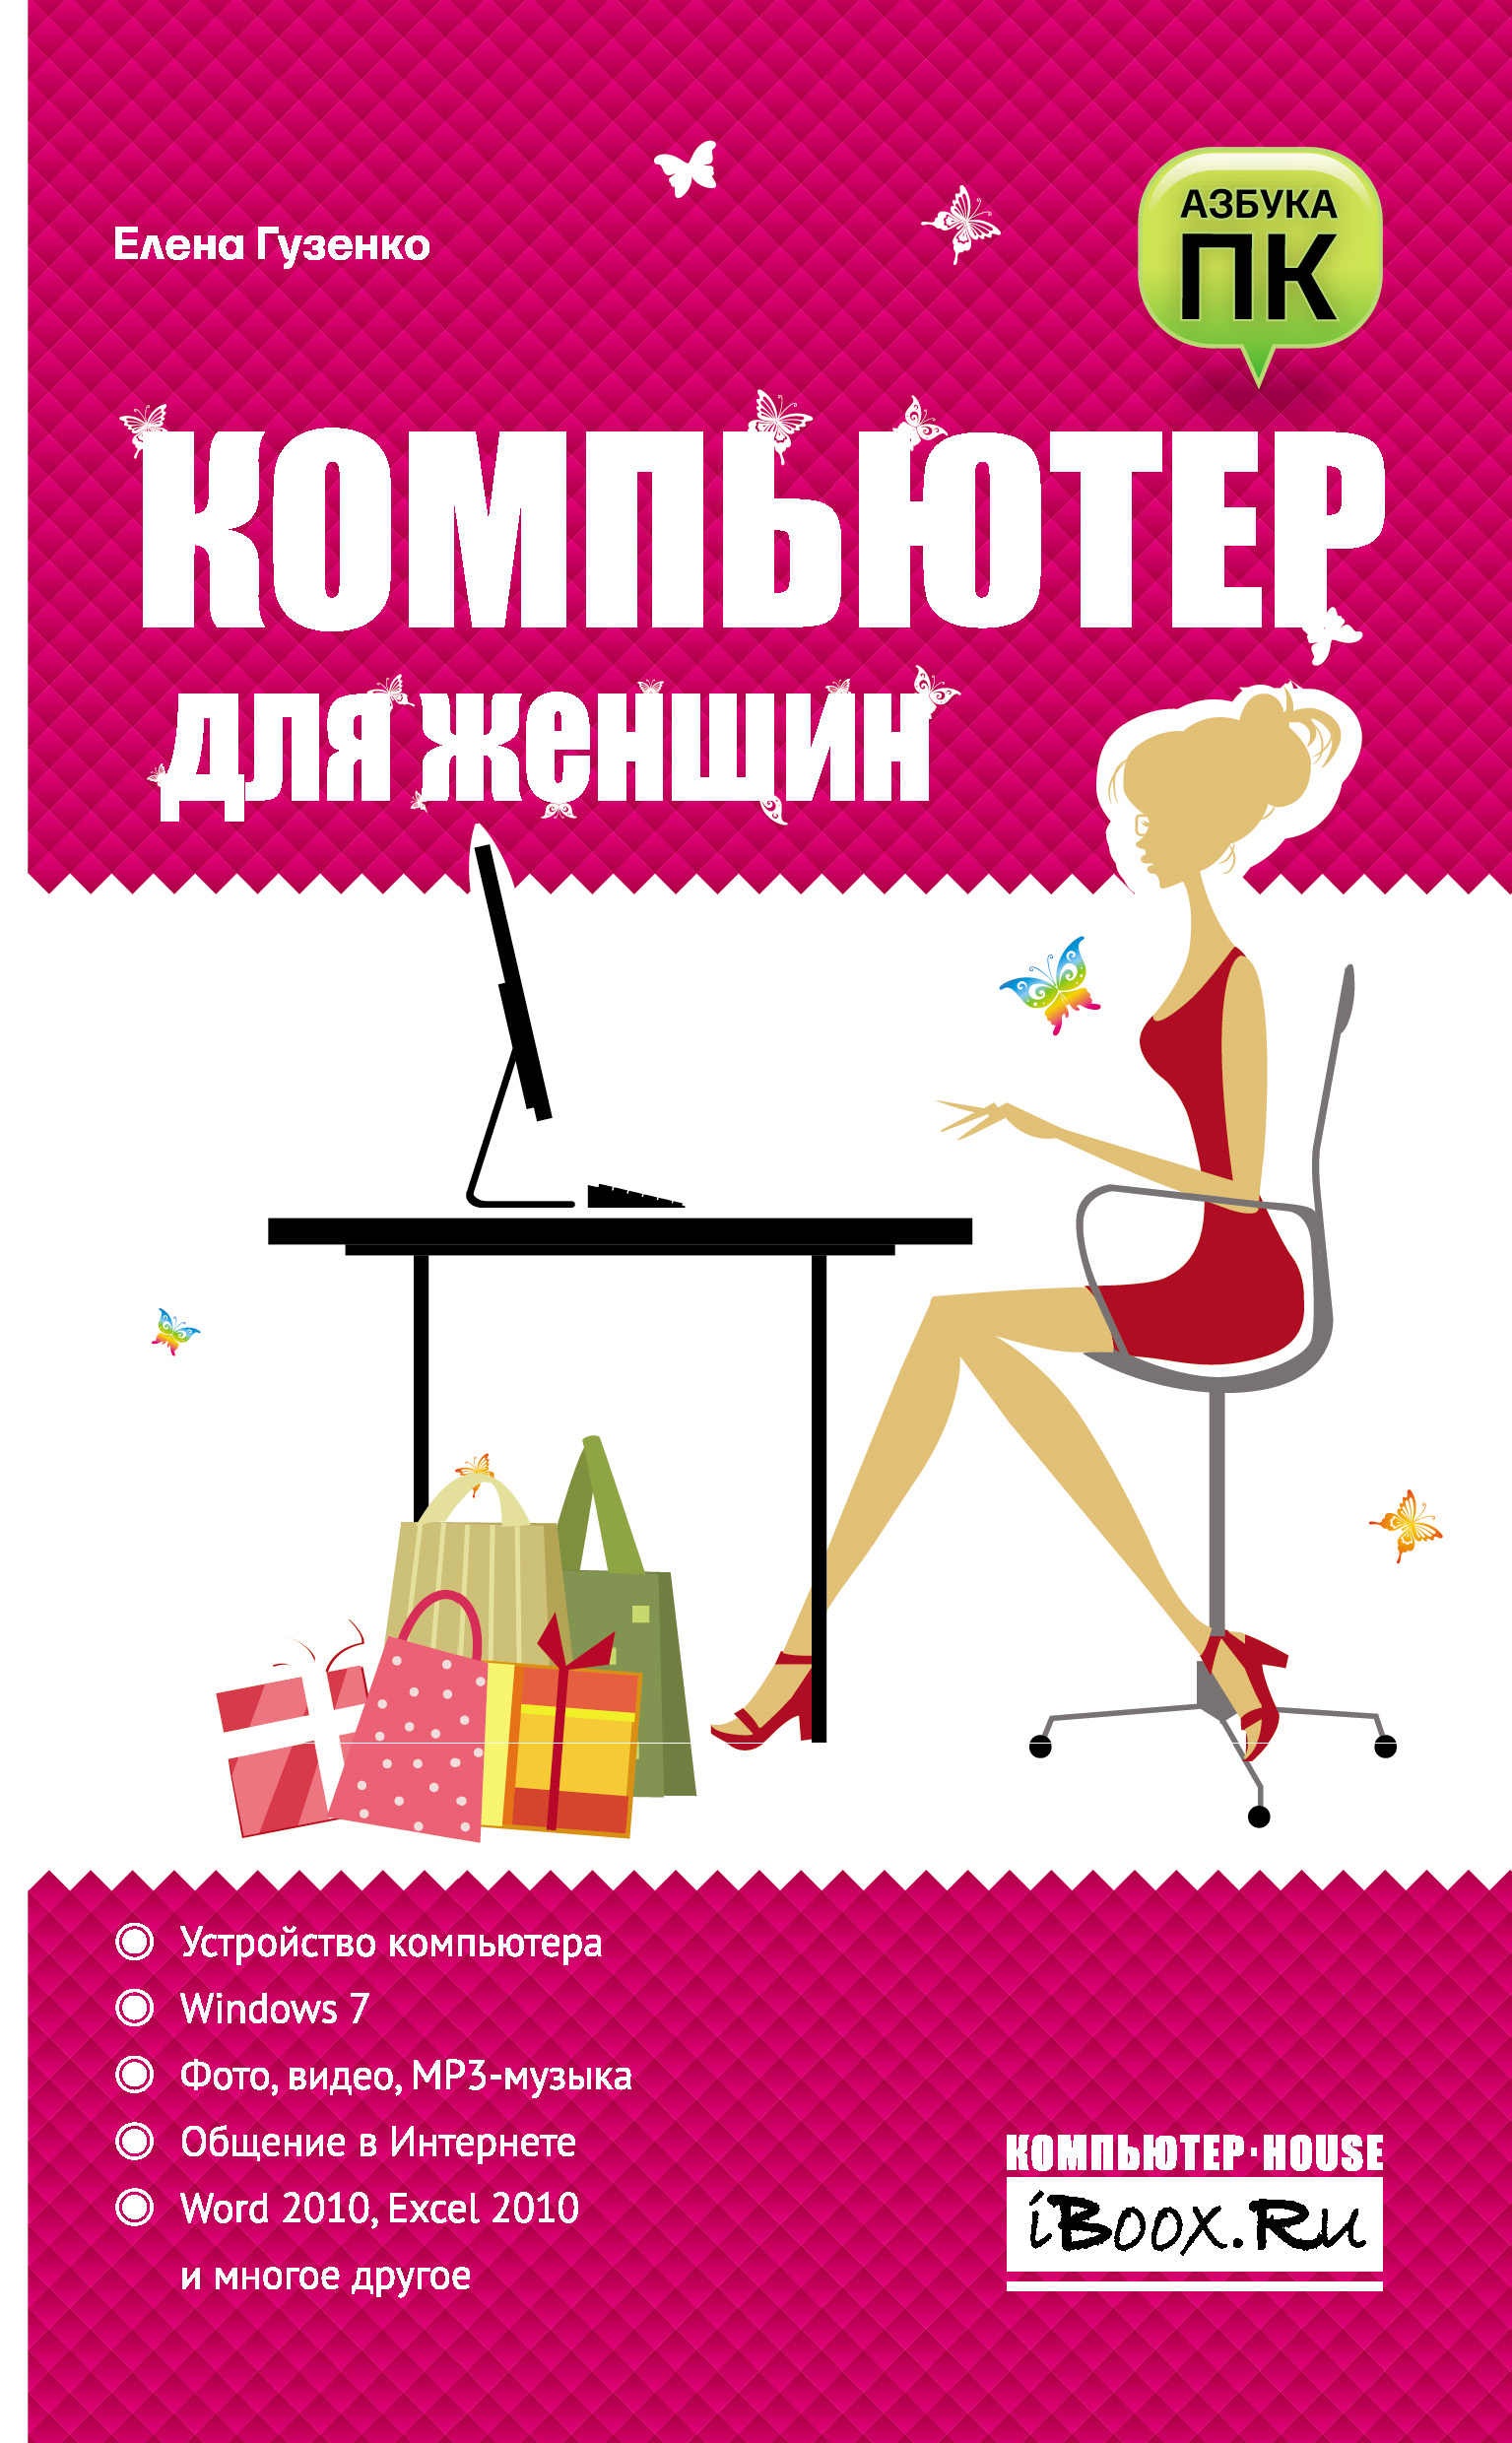 Книга  Компьютер для женщин созданная Е. Н. Гузенко может относится к жанру интернет, книги о компьютерах, ОС и сети, программы. Стоимость электронной книги Компьютер для женщин с идентификатором 6251735 составляет 79.00 руб.